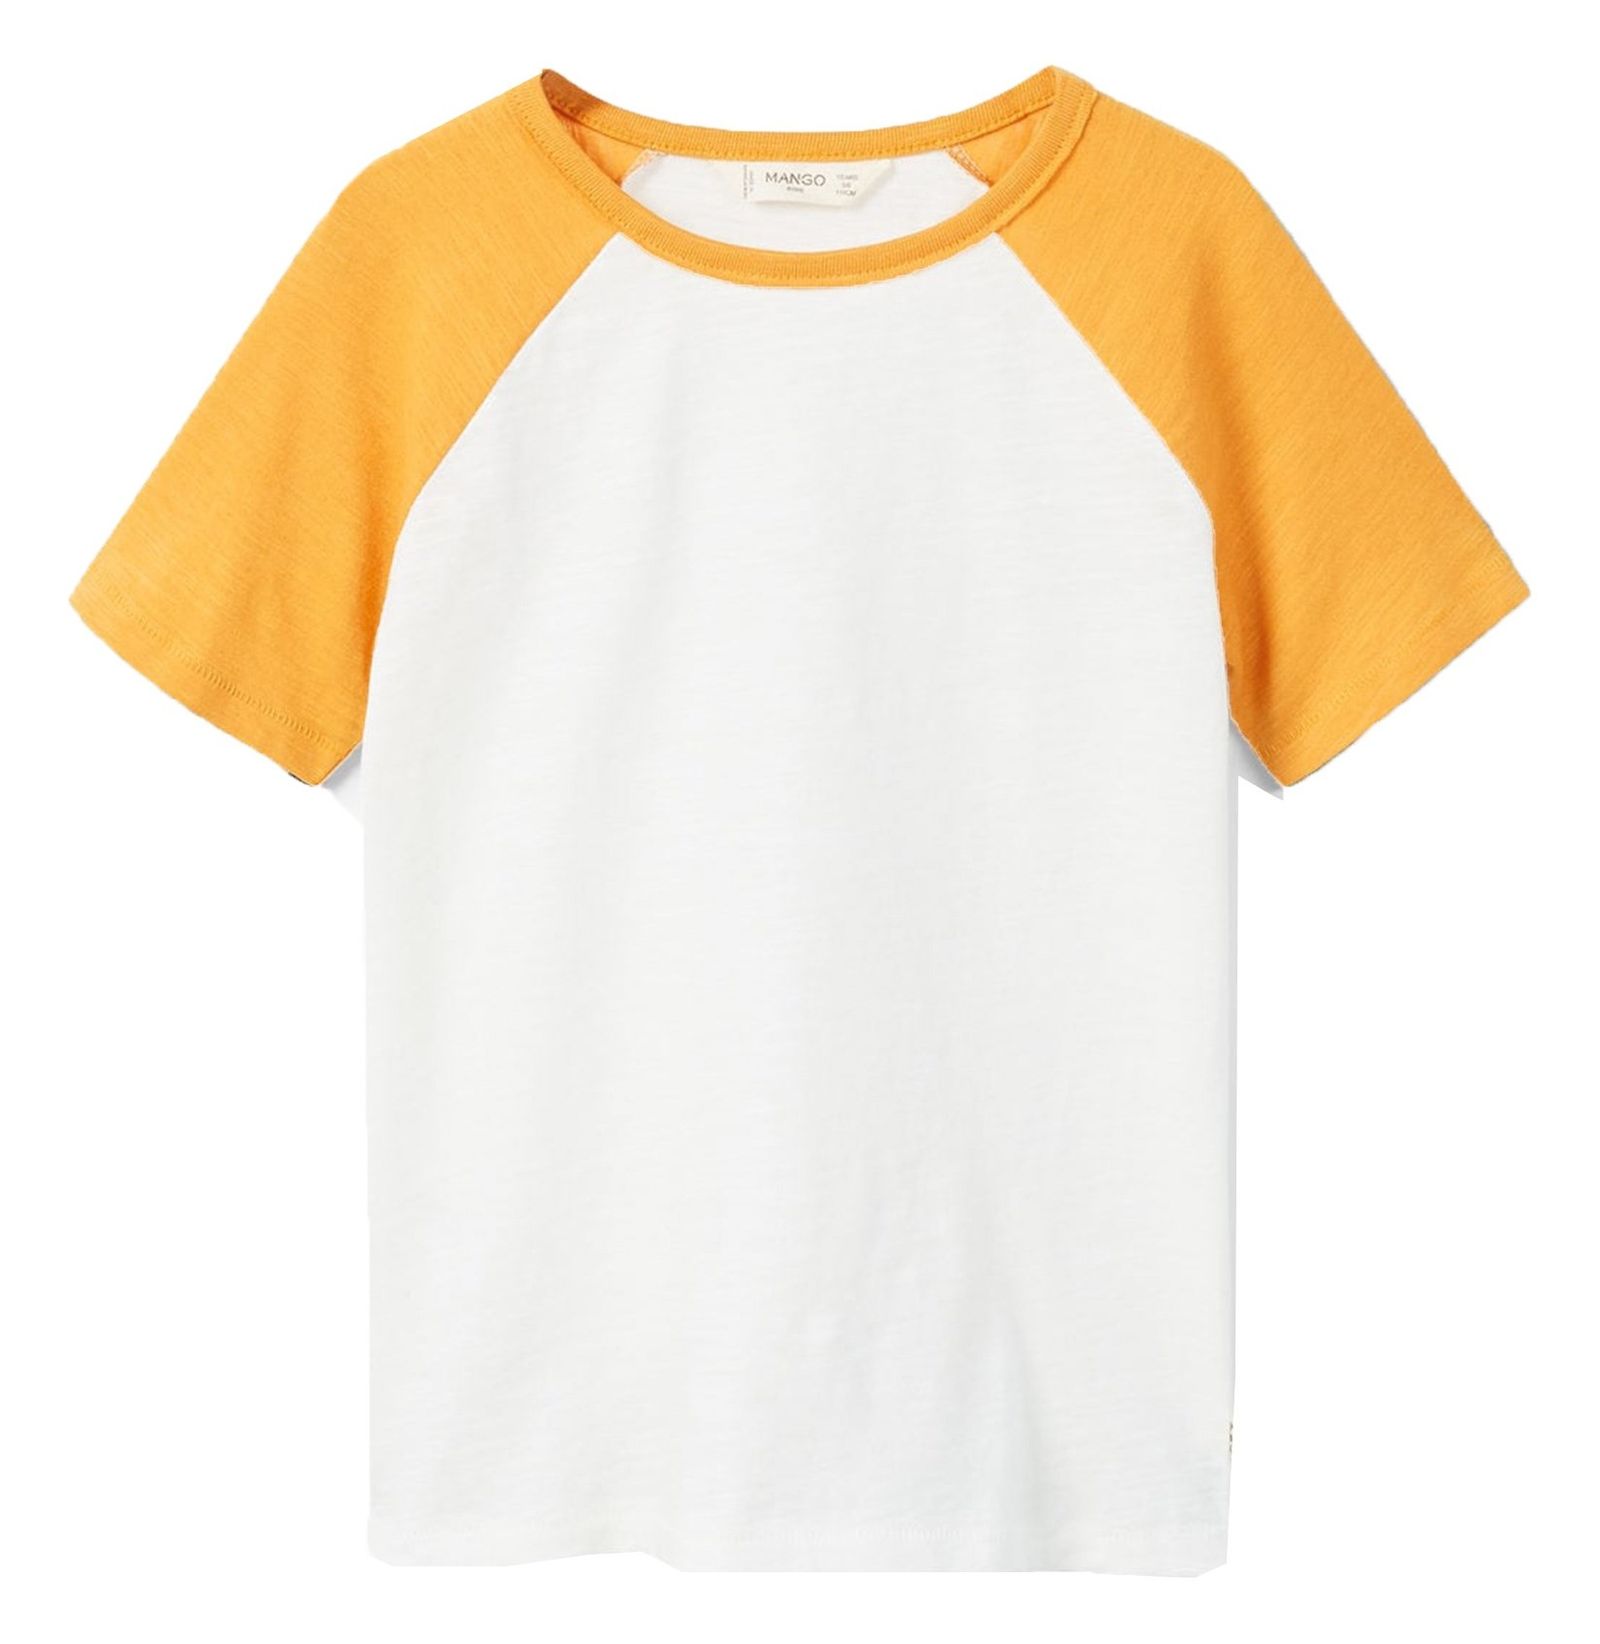 تی شرت نخی یقه گرد پسرانه - مانگو - سفيد و زرد - 1